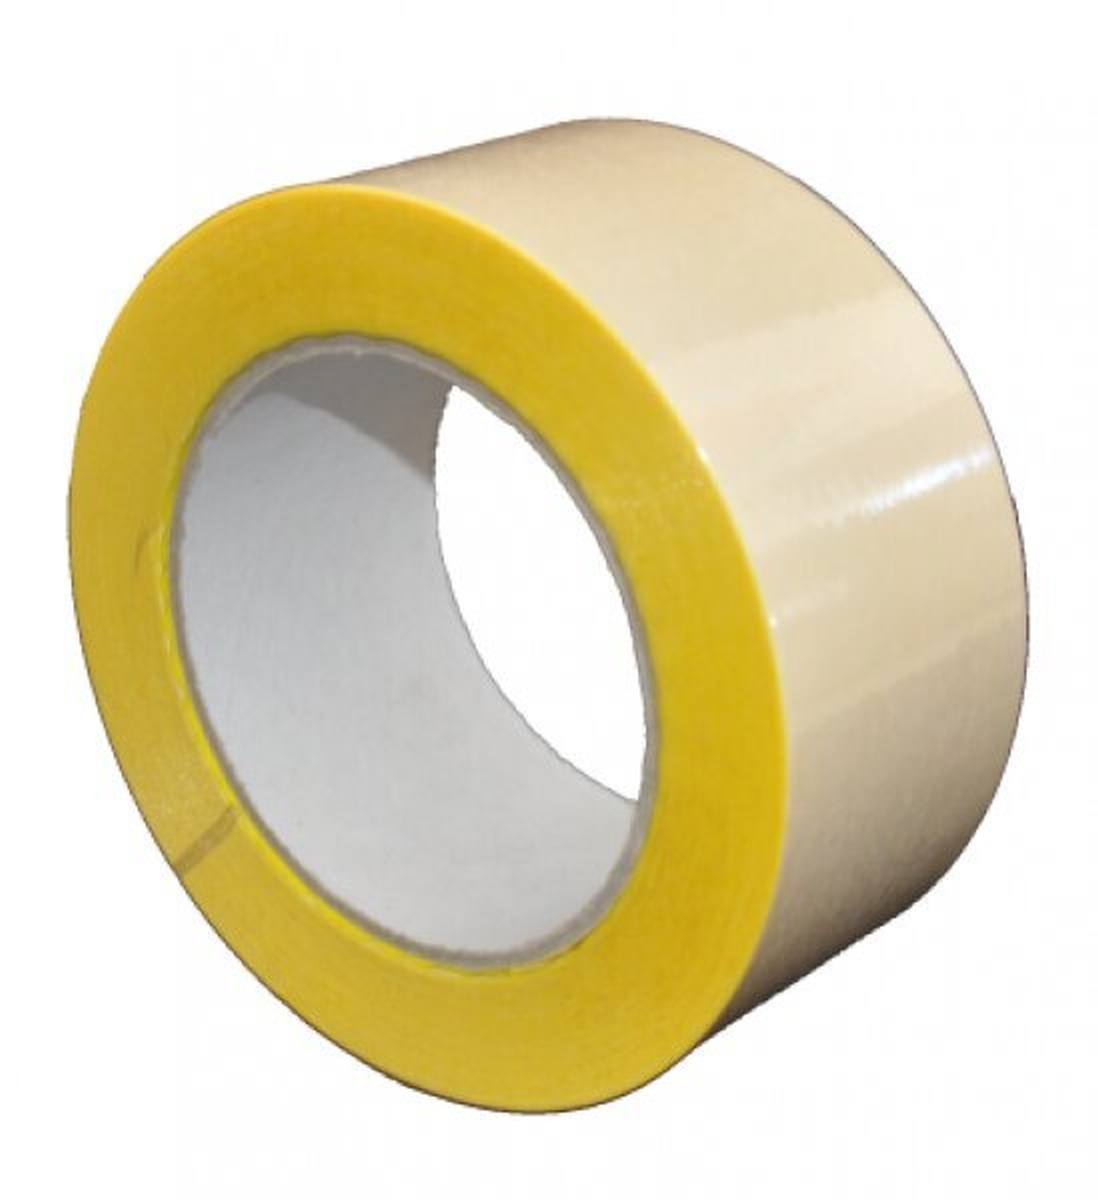 S-K-S 407 Cinta adhesiva de doble cara con soporte de polipropileno, alta / baja adhesividad, amarilla, 50 mm x 25 m, 0,15 mm